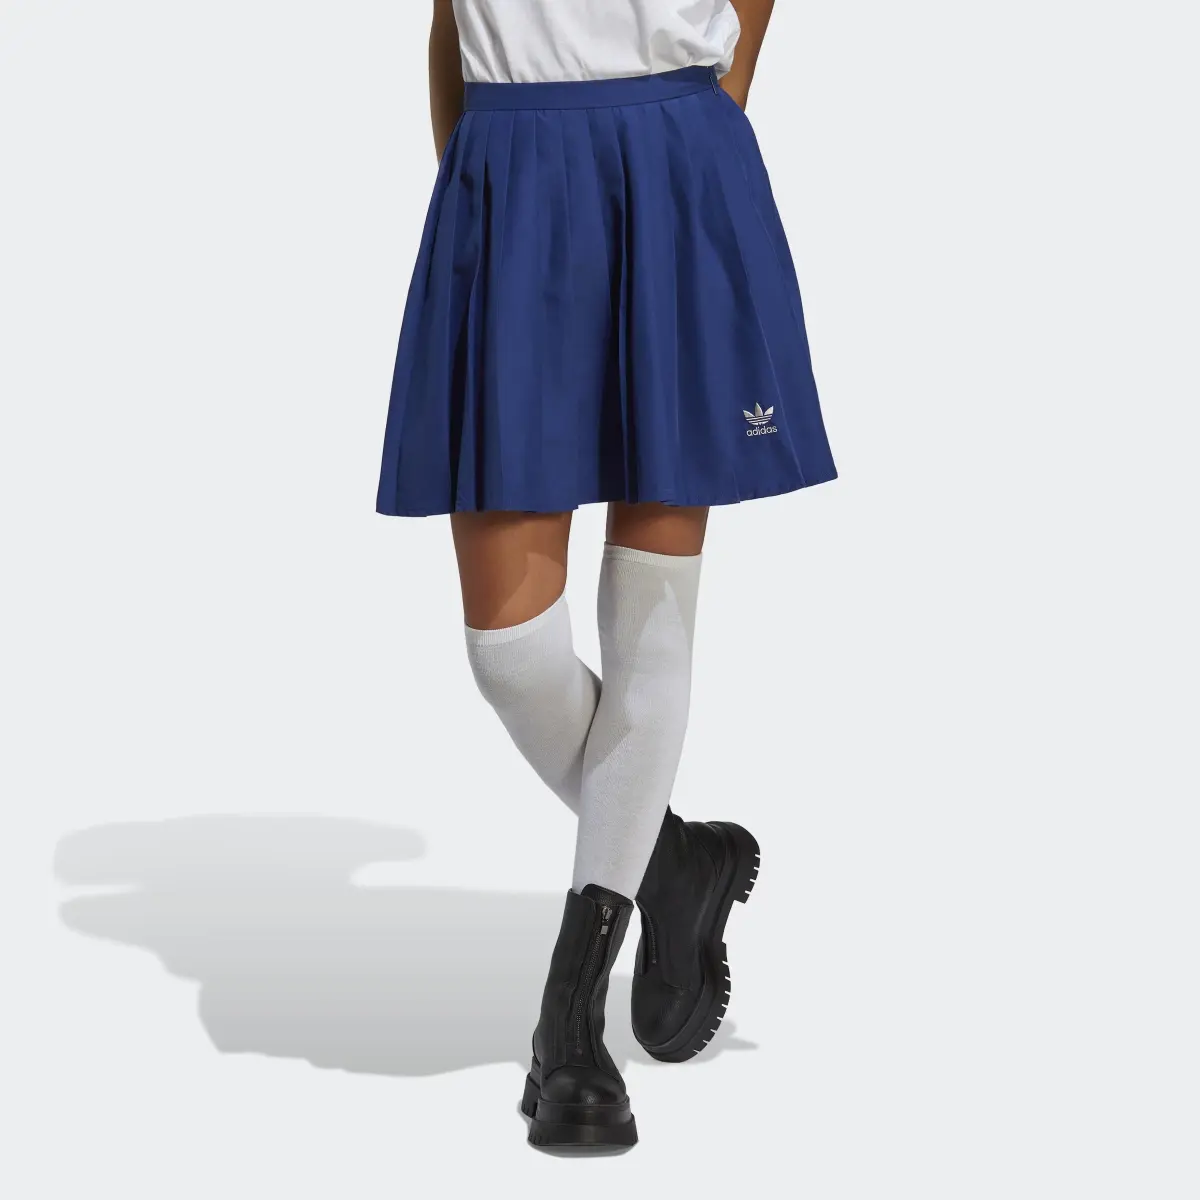 Adidas Pleated Skirt. 1